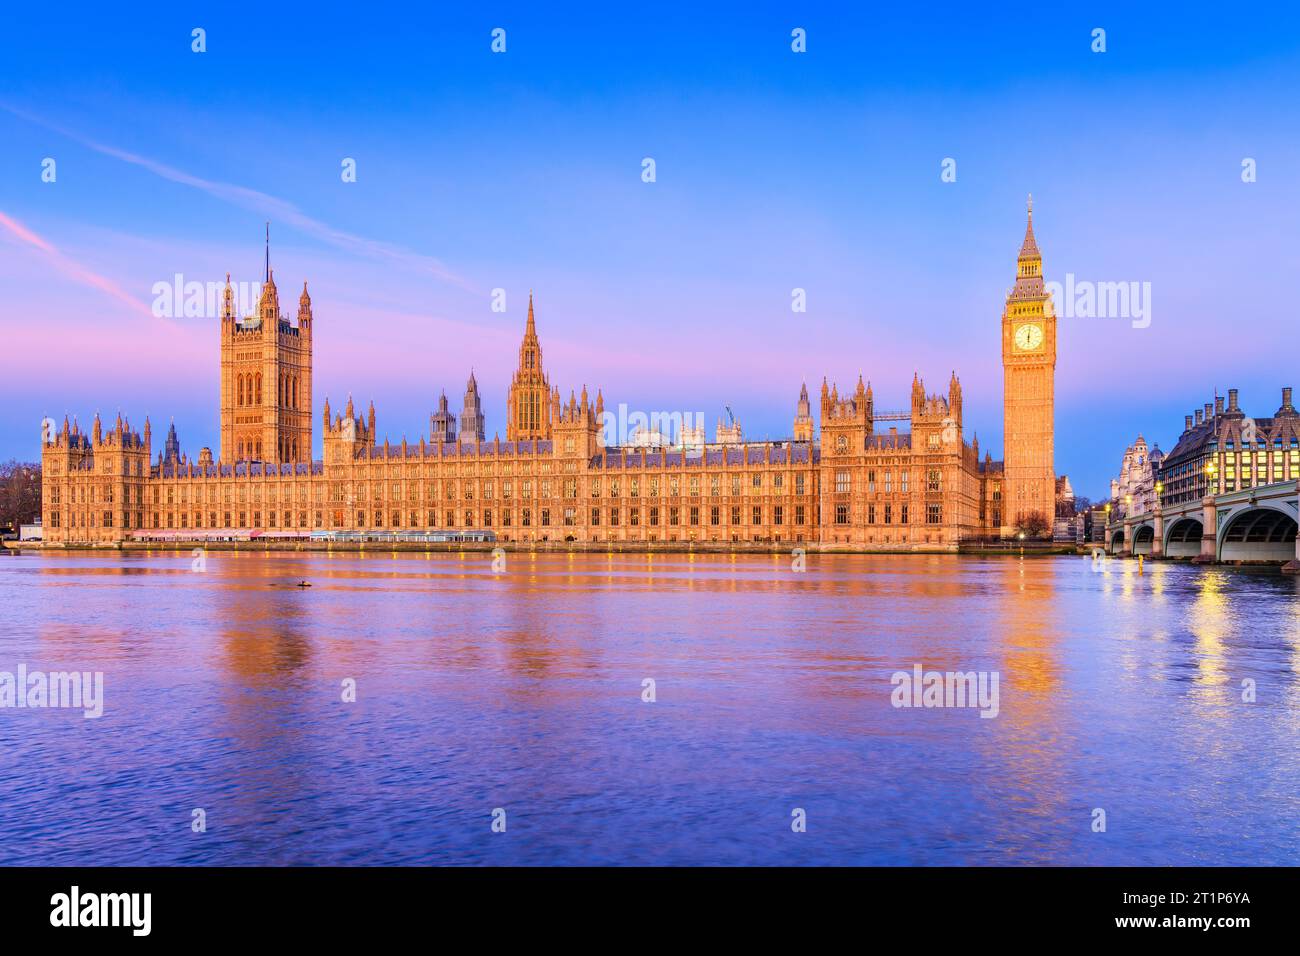 Londres, Angleterre, Royaume-Uni. Le Palais de Westminster, Big Ben et Westminster Bridge au lever du soleil. Banque D'Images